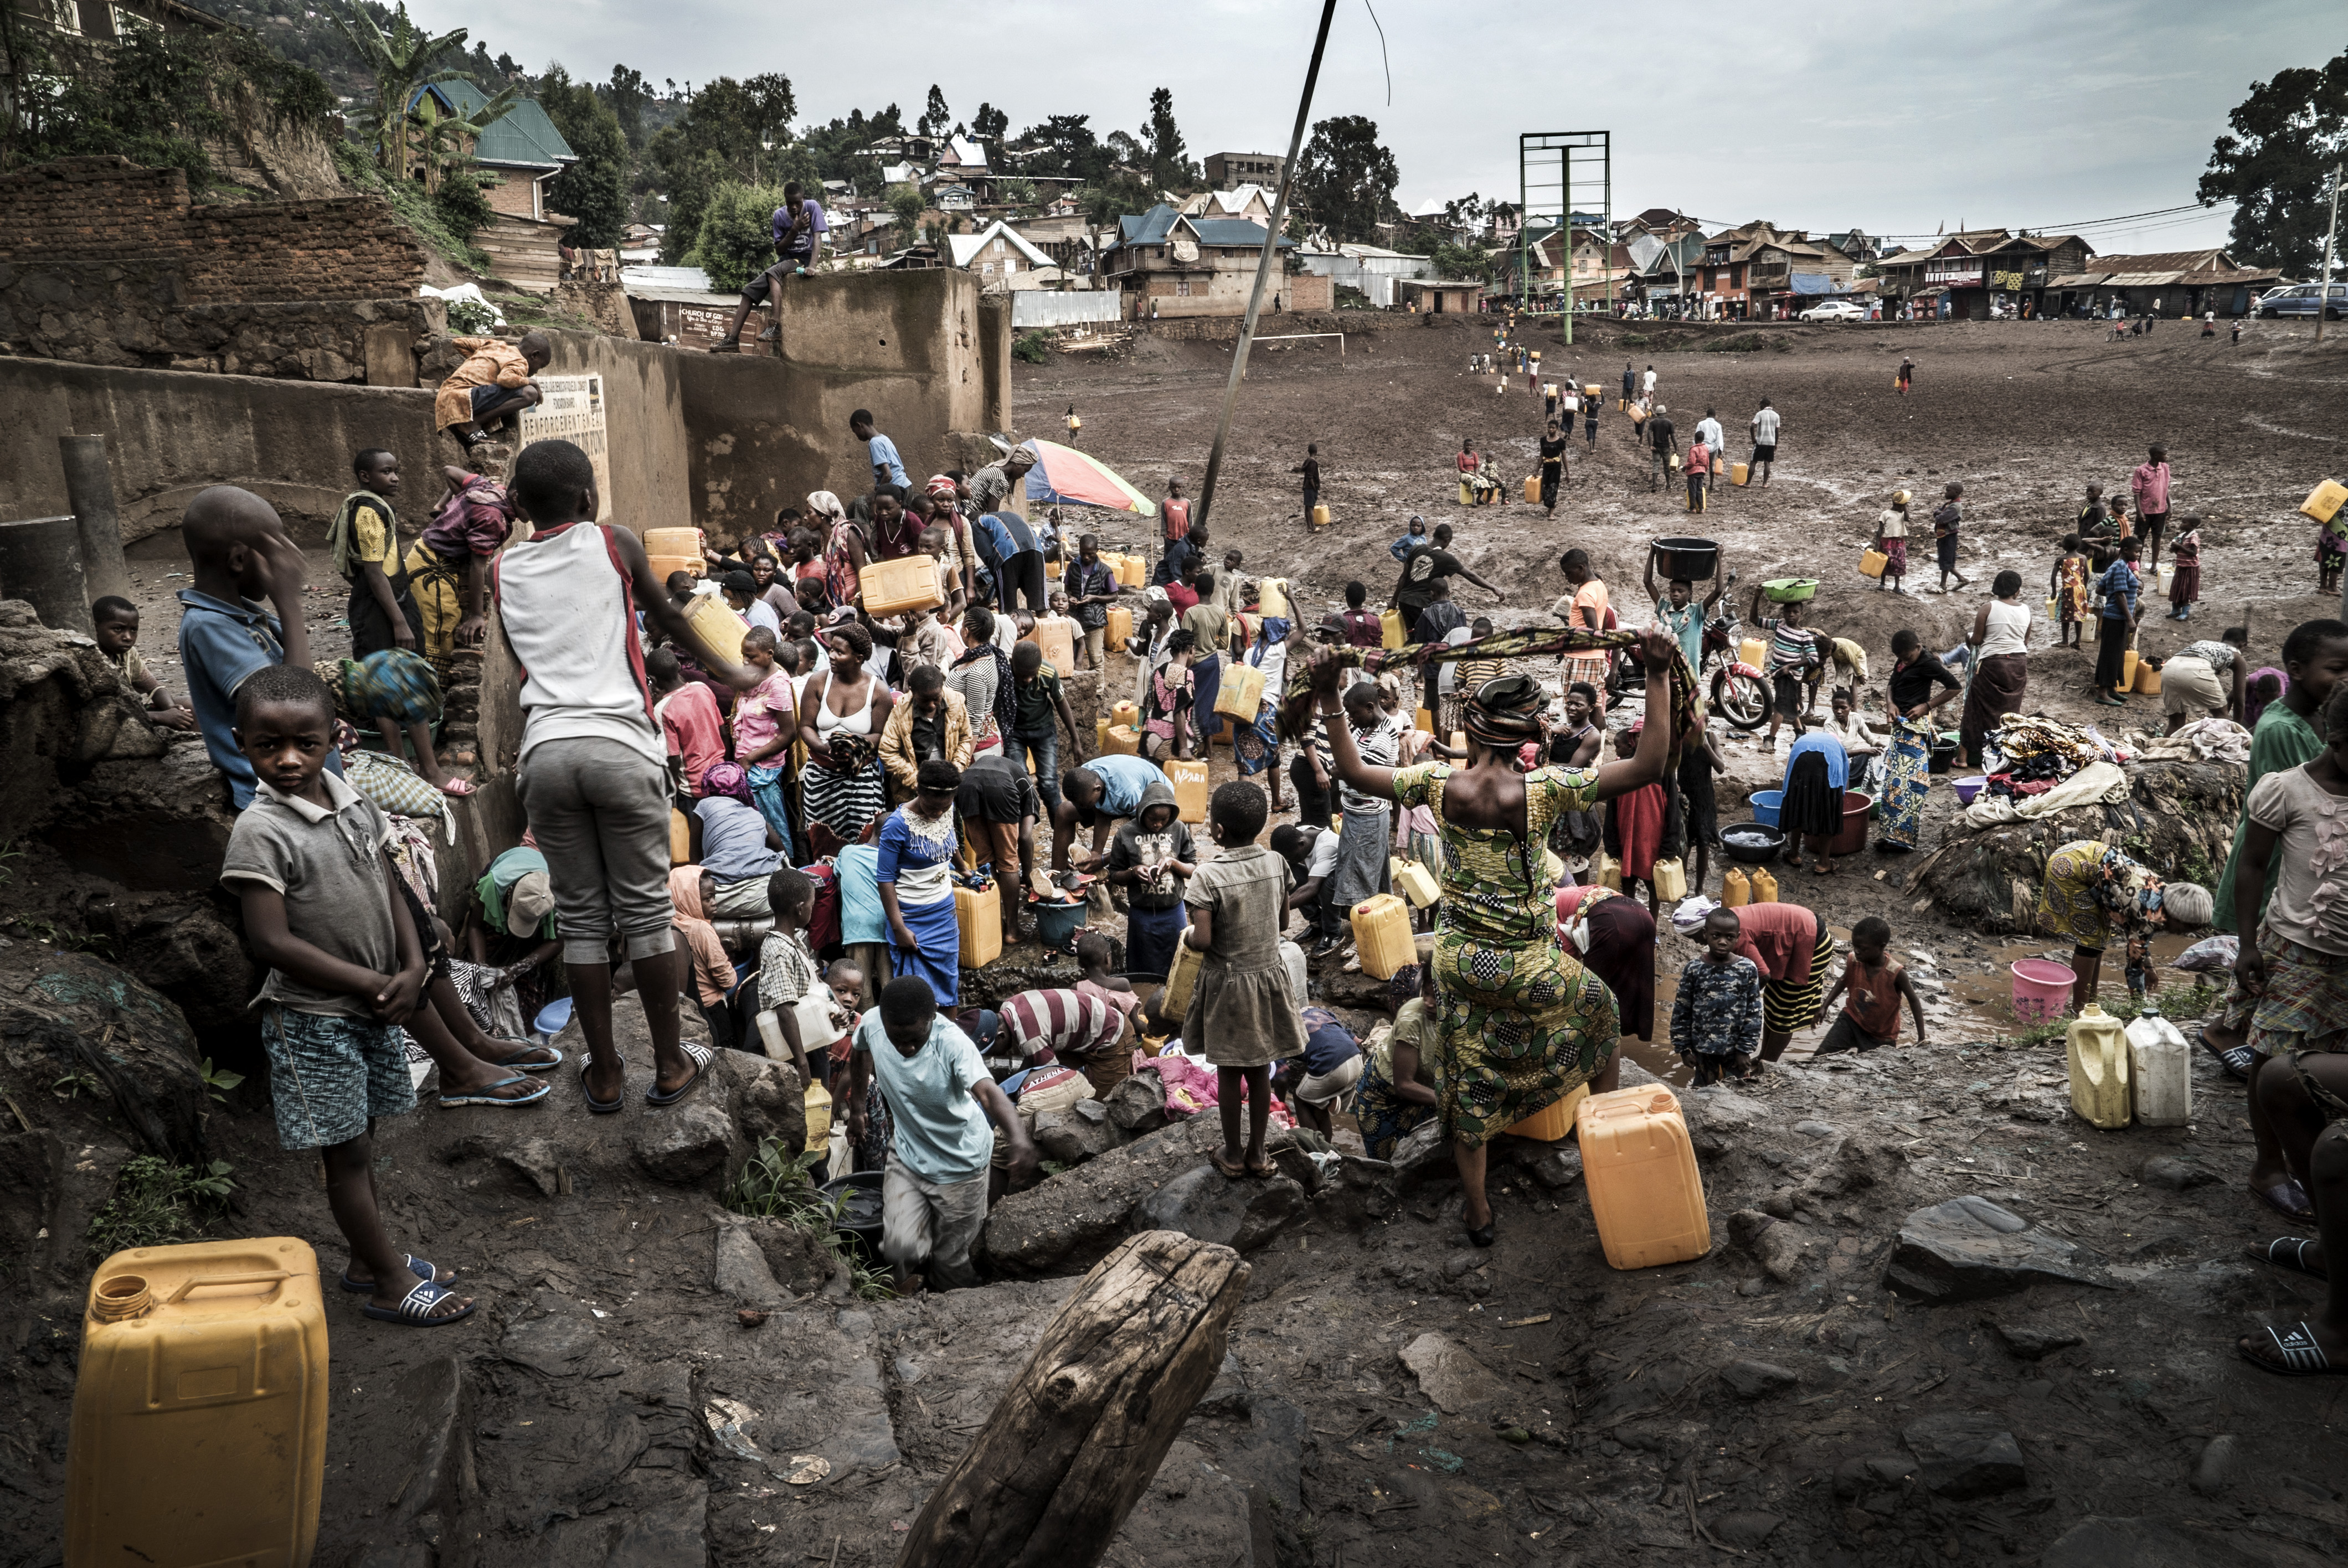 Жизнь в бедных странах. Демократическая Республика Конго нищета.